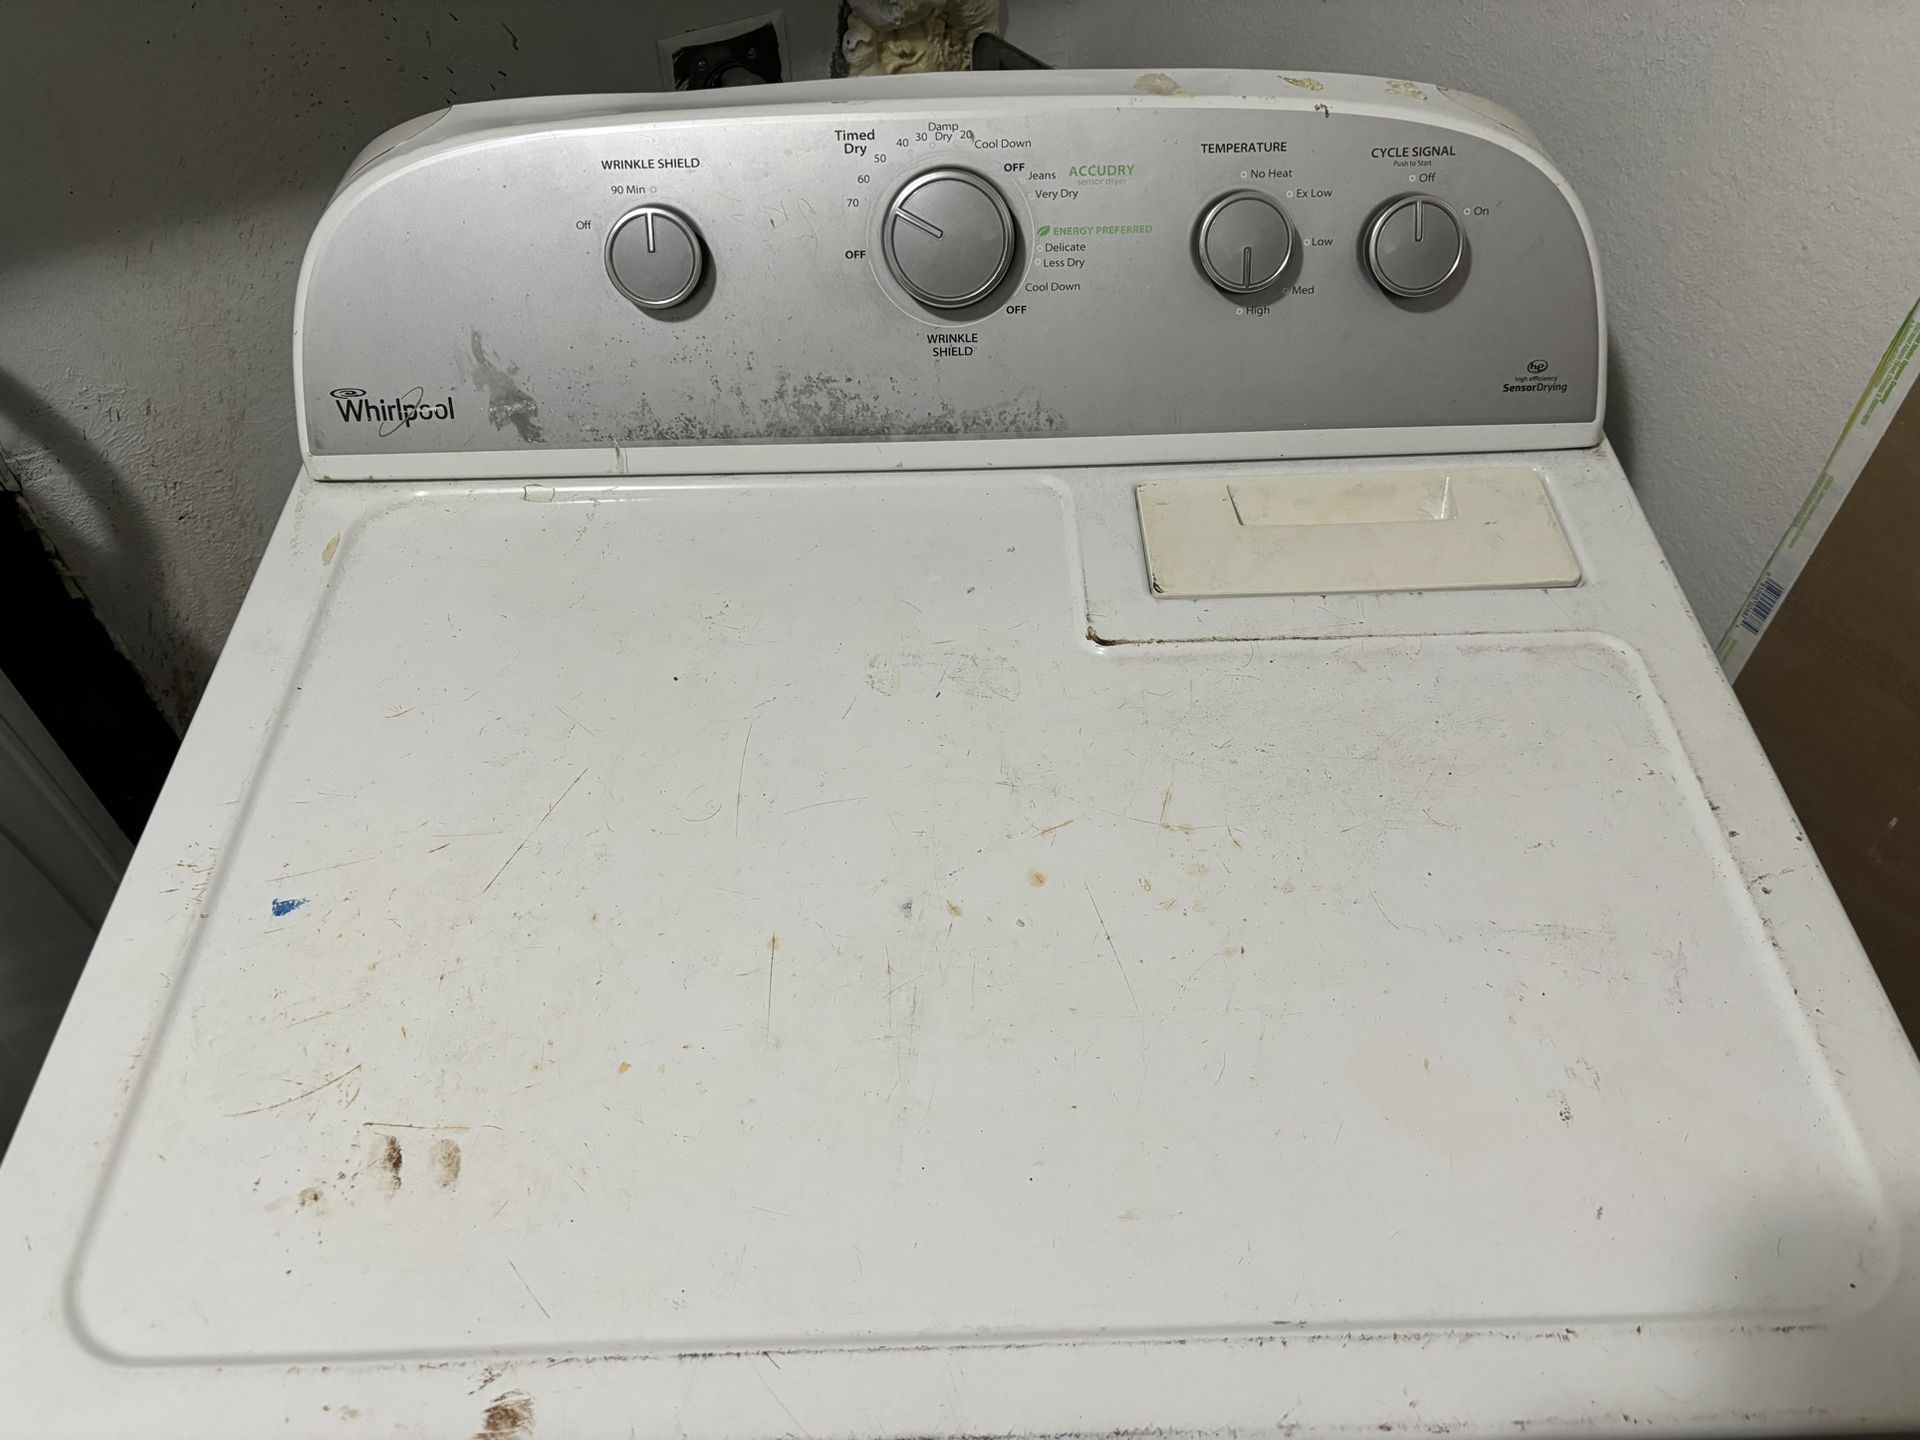 Used dryer 